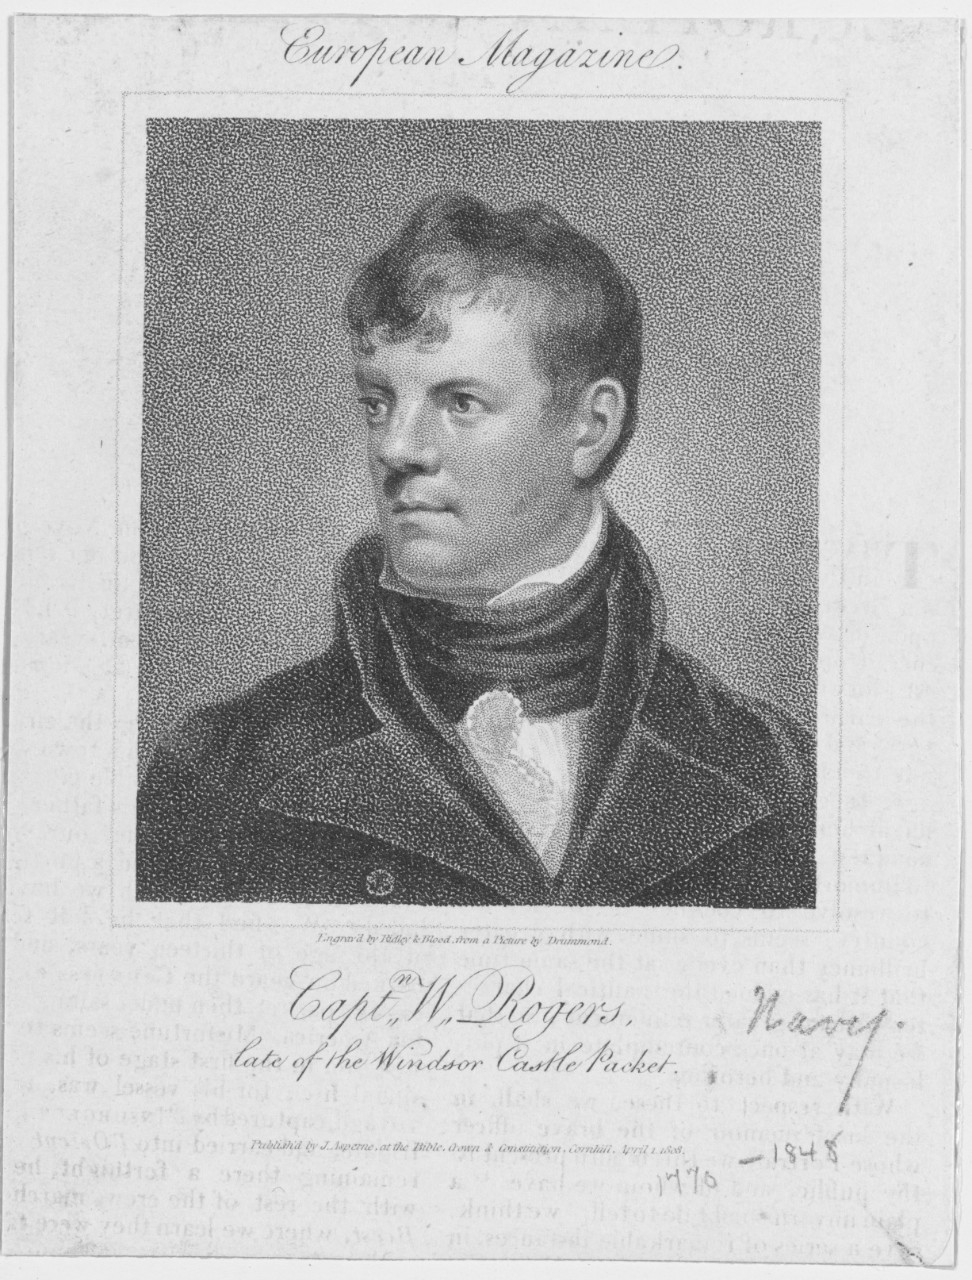 Captain William Rogers, 1770-1848